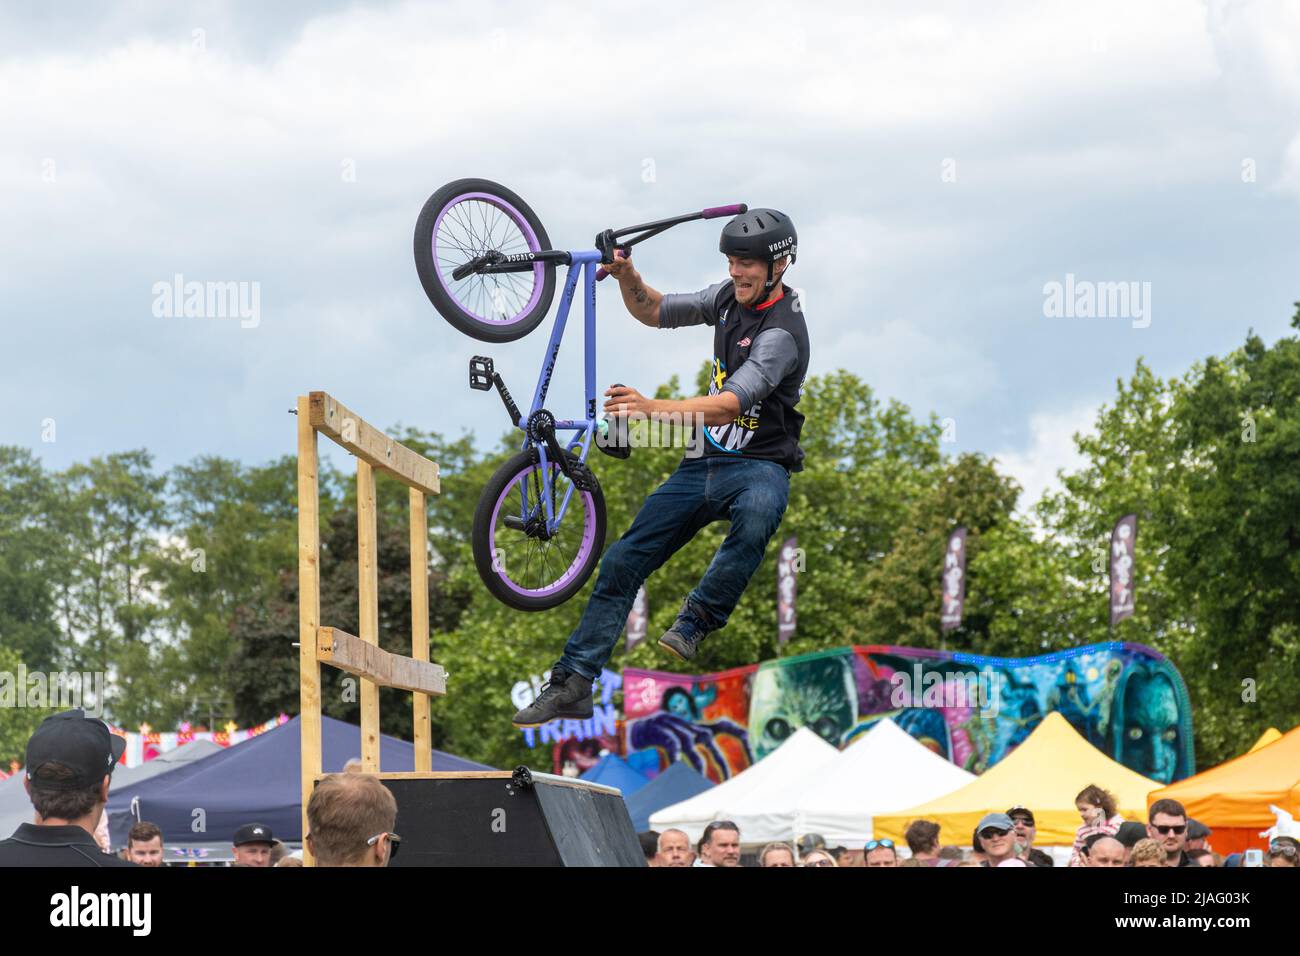 L'Extreme Mountain Bike Show, qui effectue des tours de vélo lors d'un événement à Farnborough, en Angleterre, au Royaume-Uni. Banque D'Images